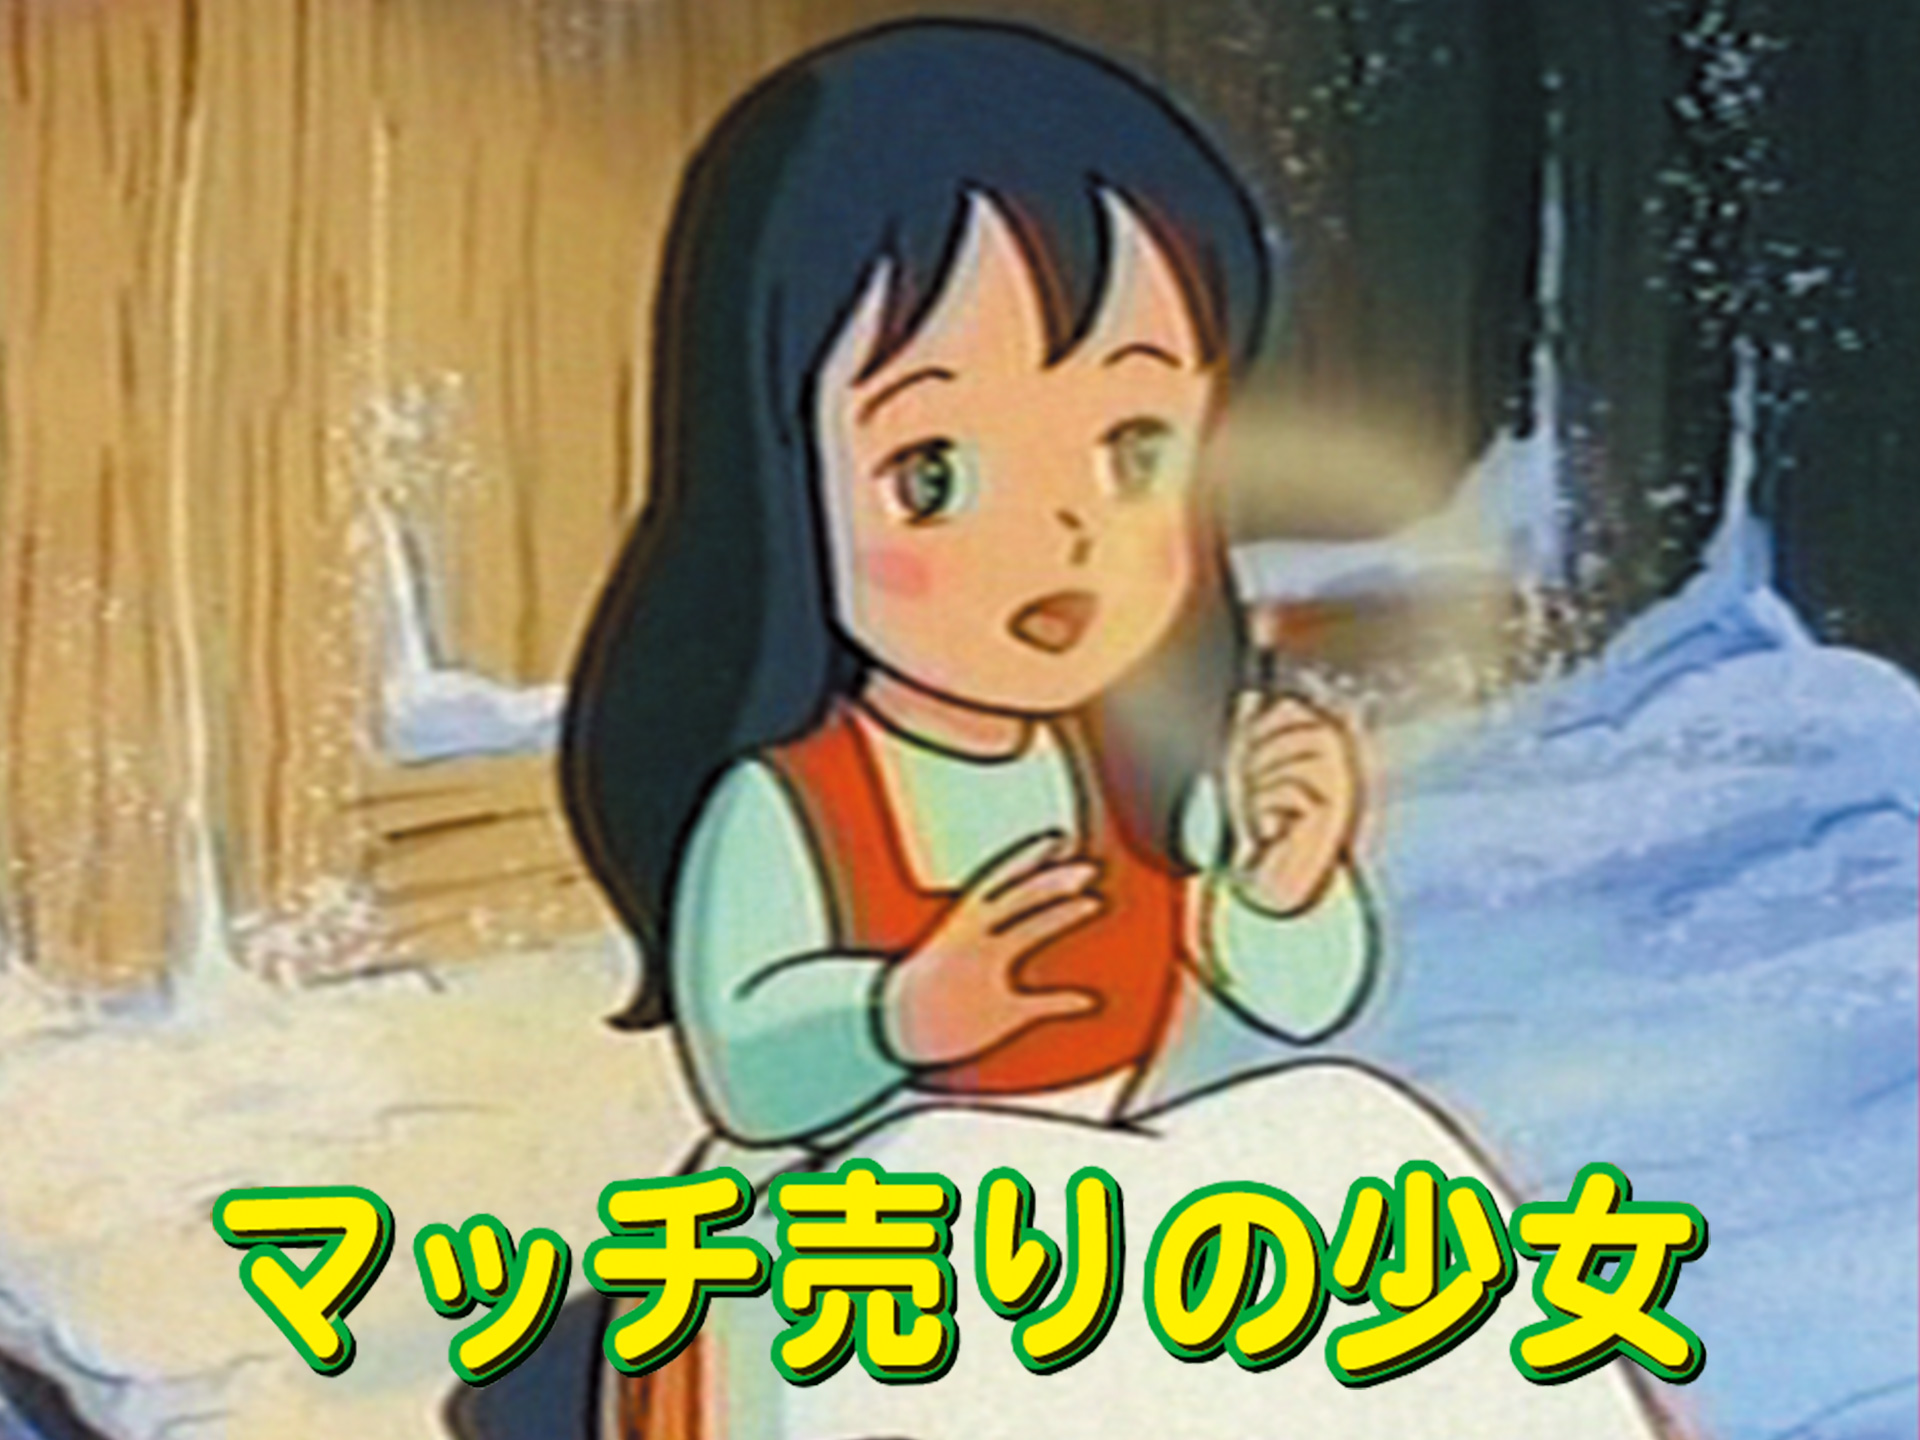 アニメ マッチ売りの少女 の動画 初月無料 動画配信サービスのビデオマーケット